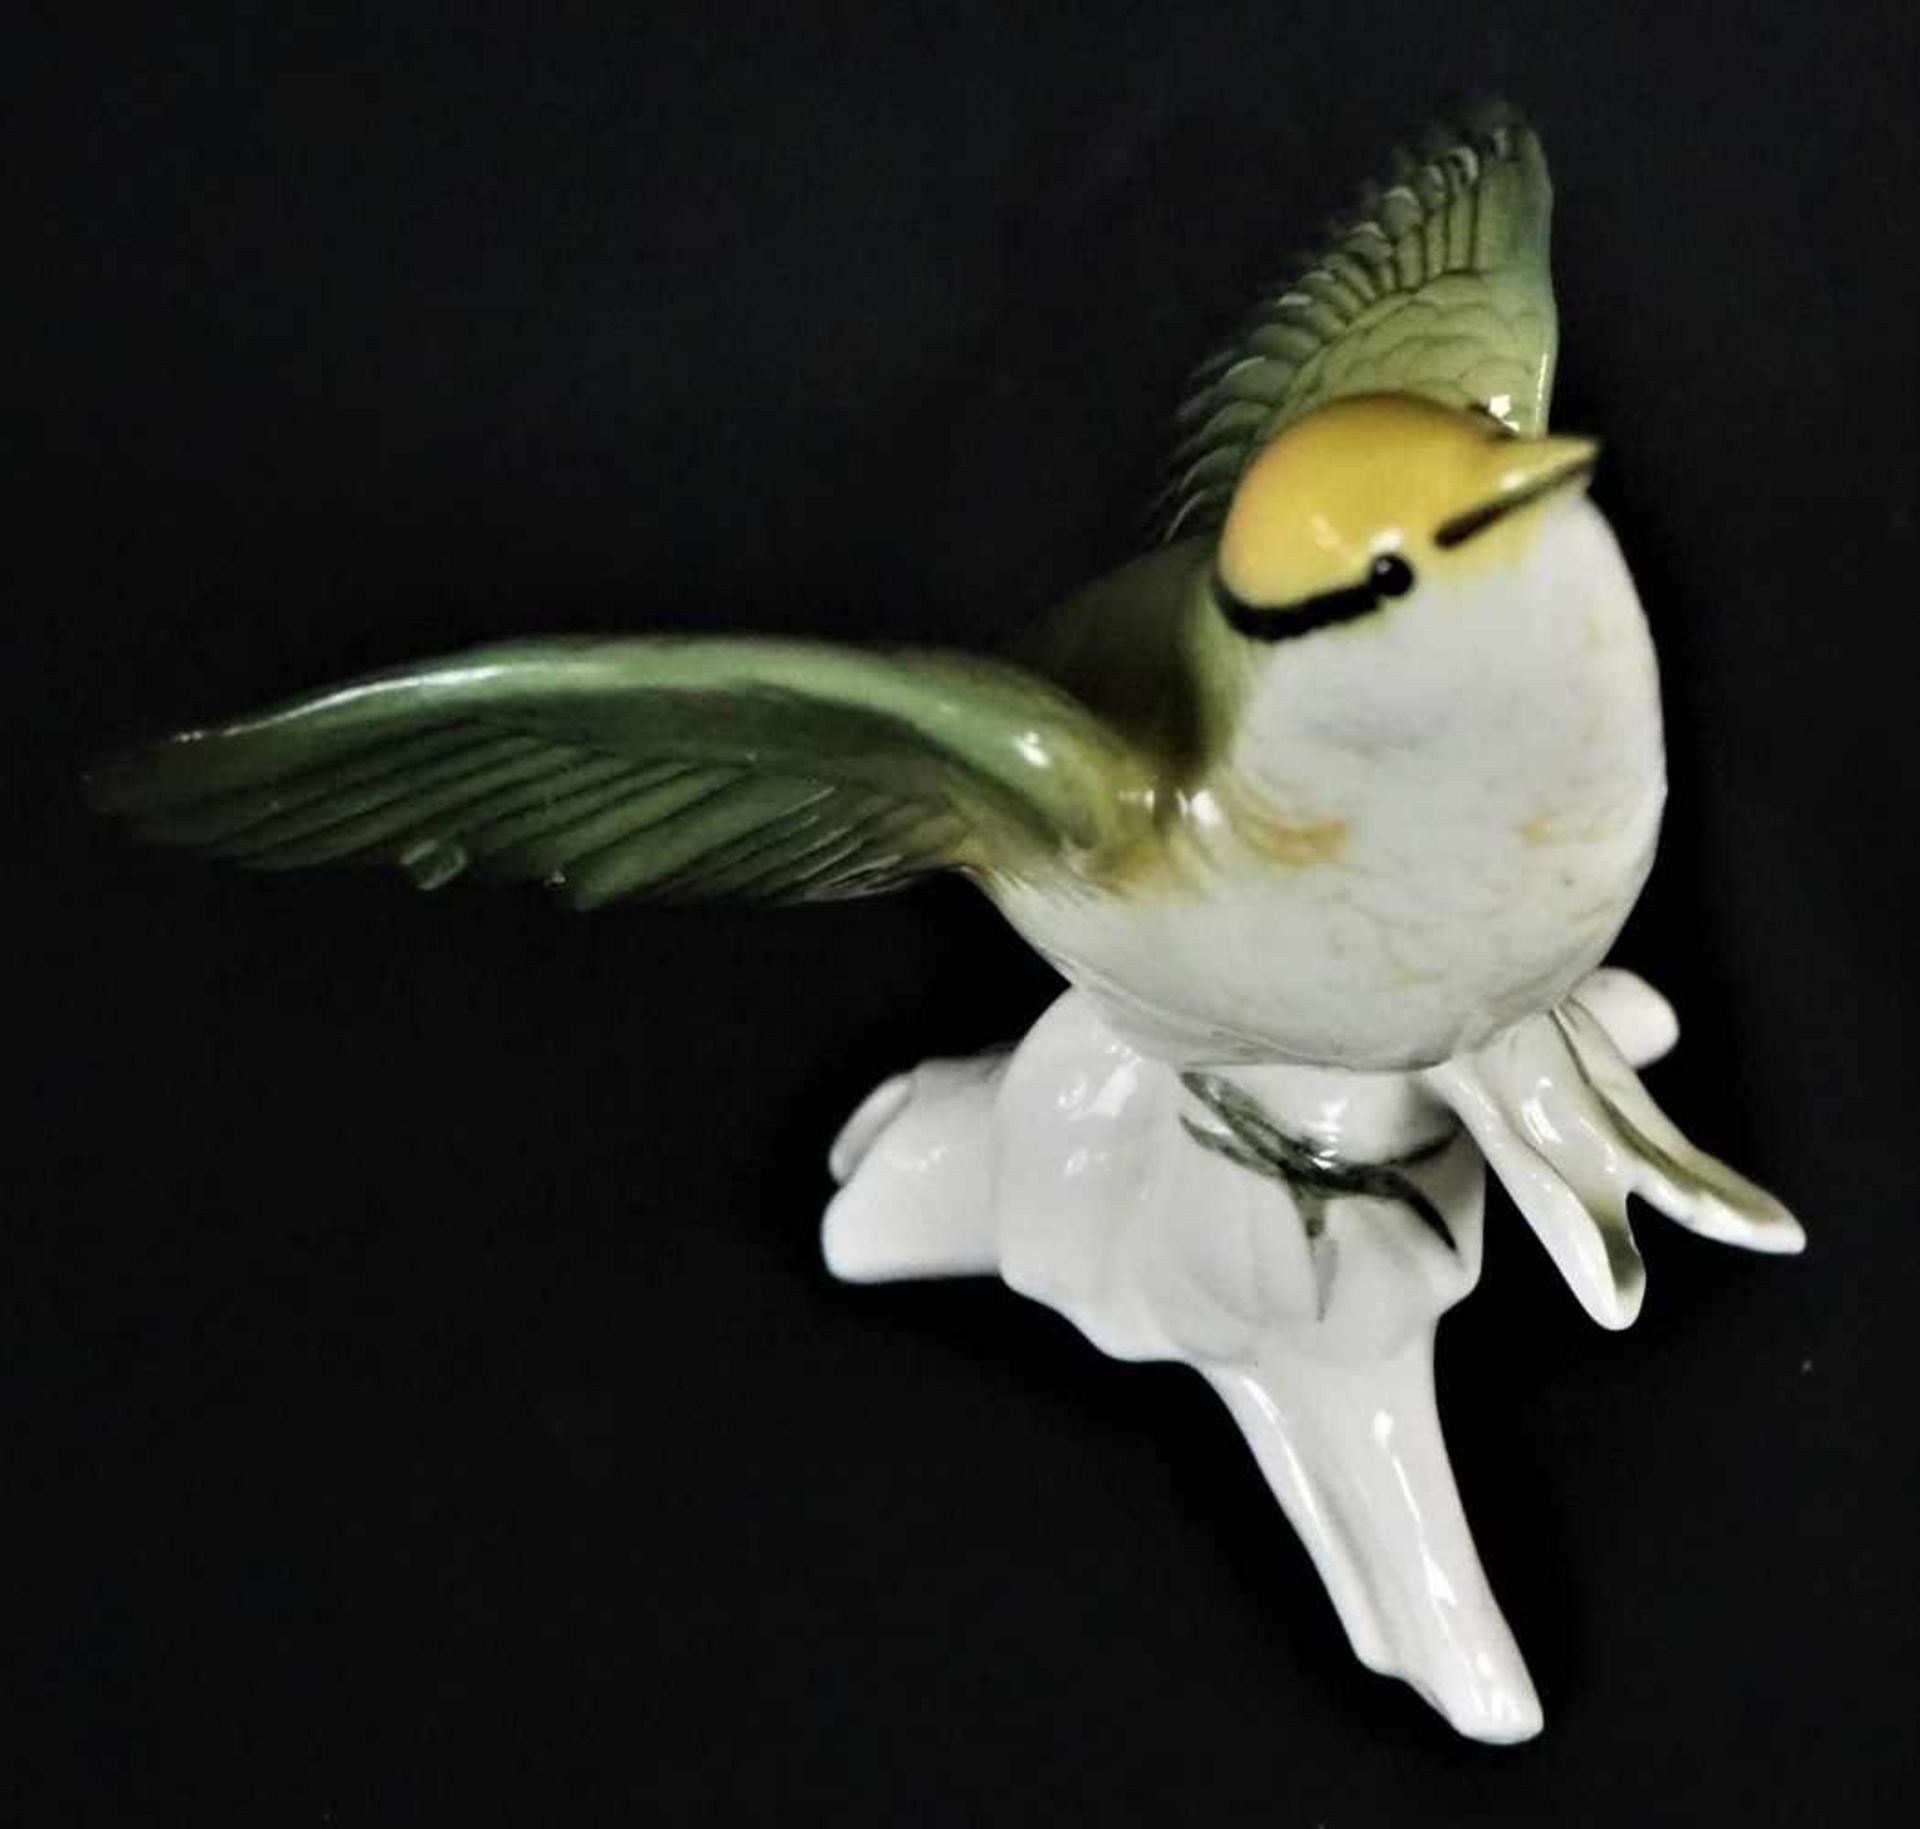 Drei Vogelfiguren aus Porzellan - ENSbemalt und glasiert, alle drei Figuren mit "ENS" gemarkt, - Bild 2 aus 5